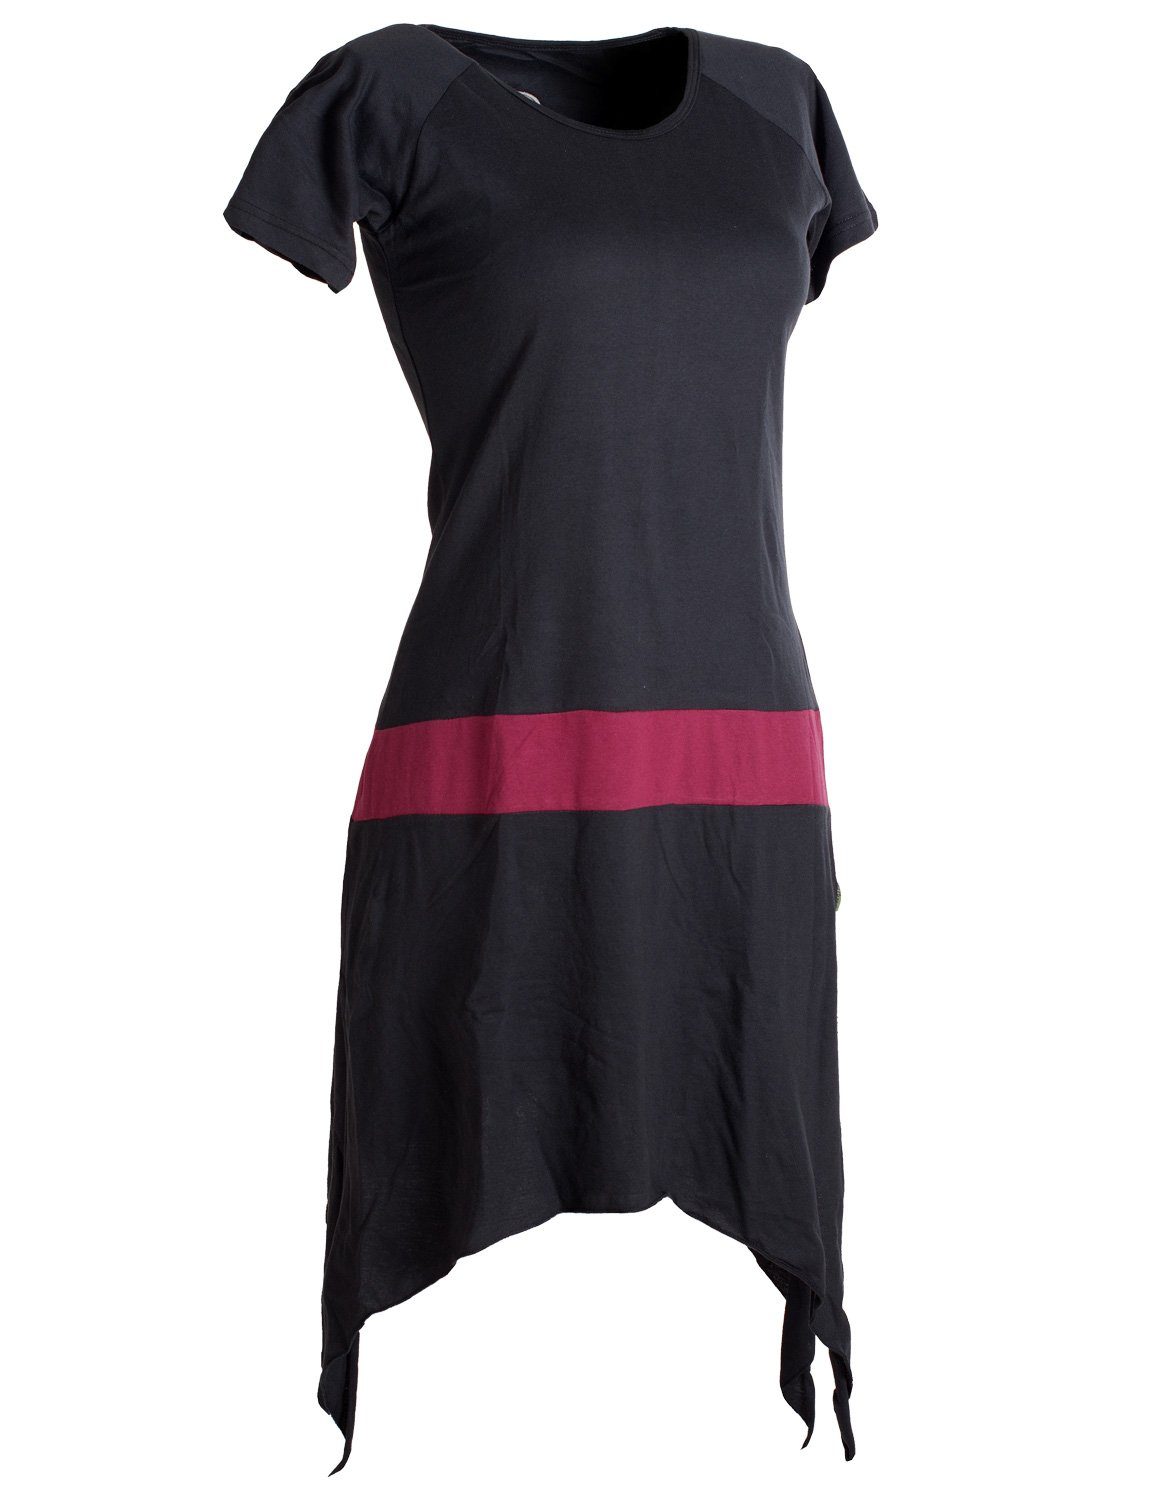 Hippie Longshirt, Vishes Zipfelkleid Sommerkleid Baumwolle kurzärmliges Style Tunika, schwarz-dunkelrot aus Einfaches